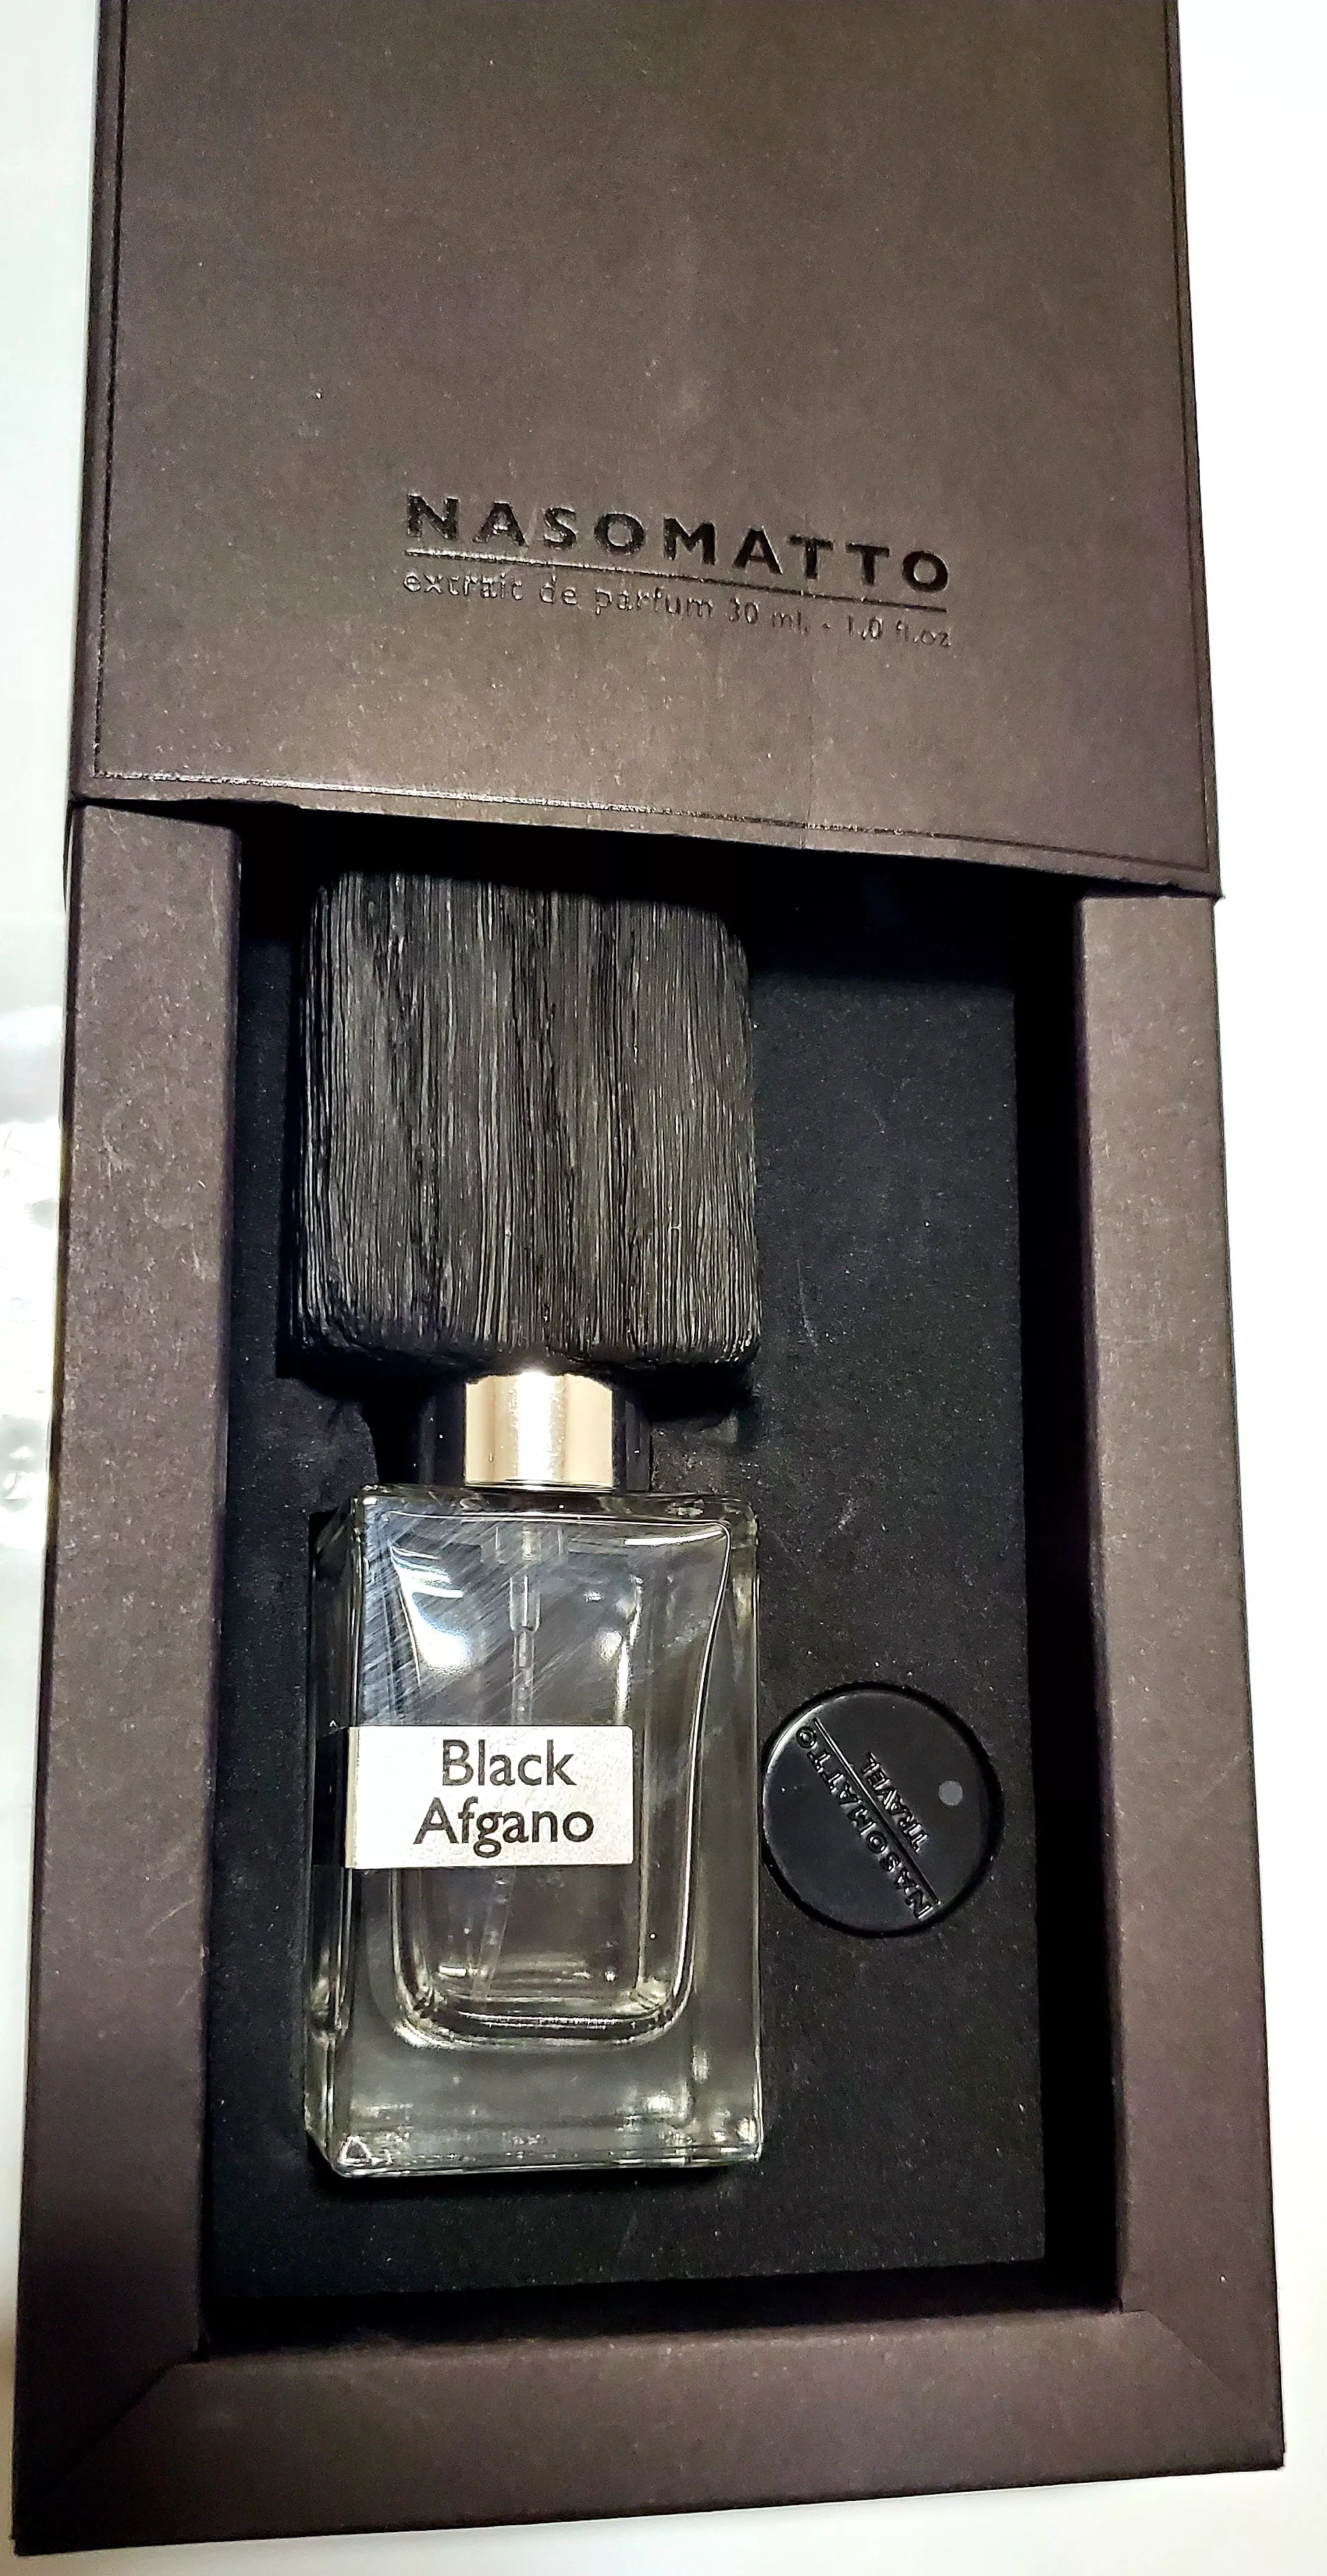 Nasomatto Black Afgano - extrait de parfum - пробник (виалка) - 2 ml (отливант - читайте в описании)